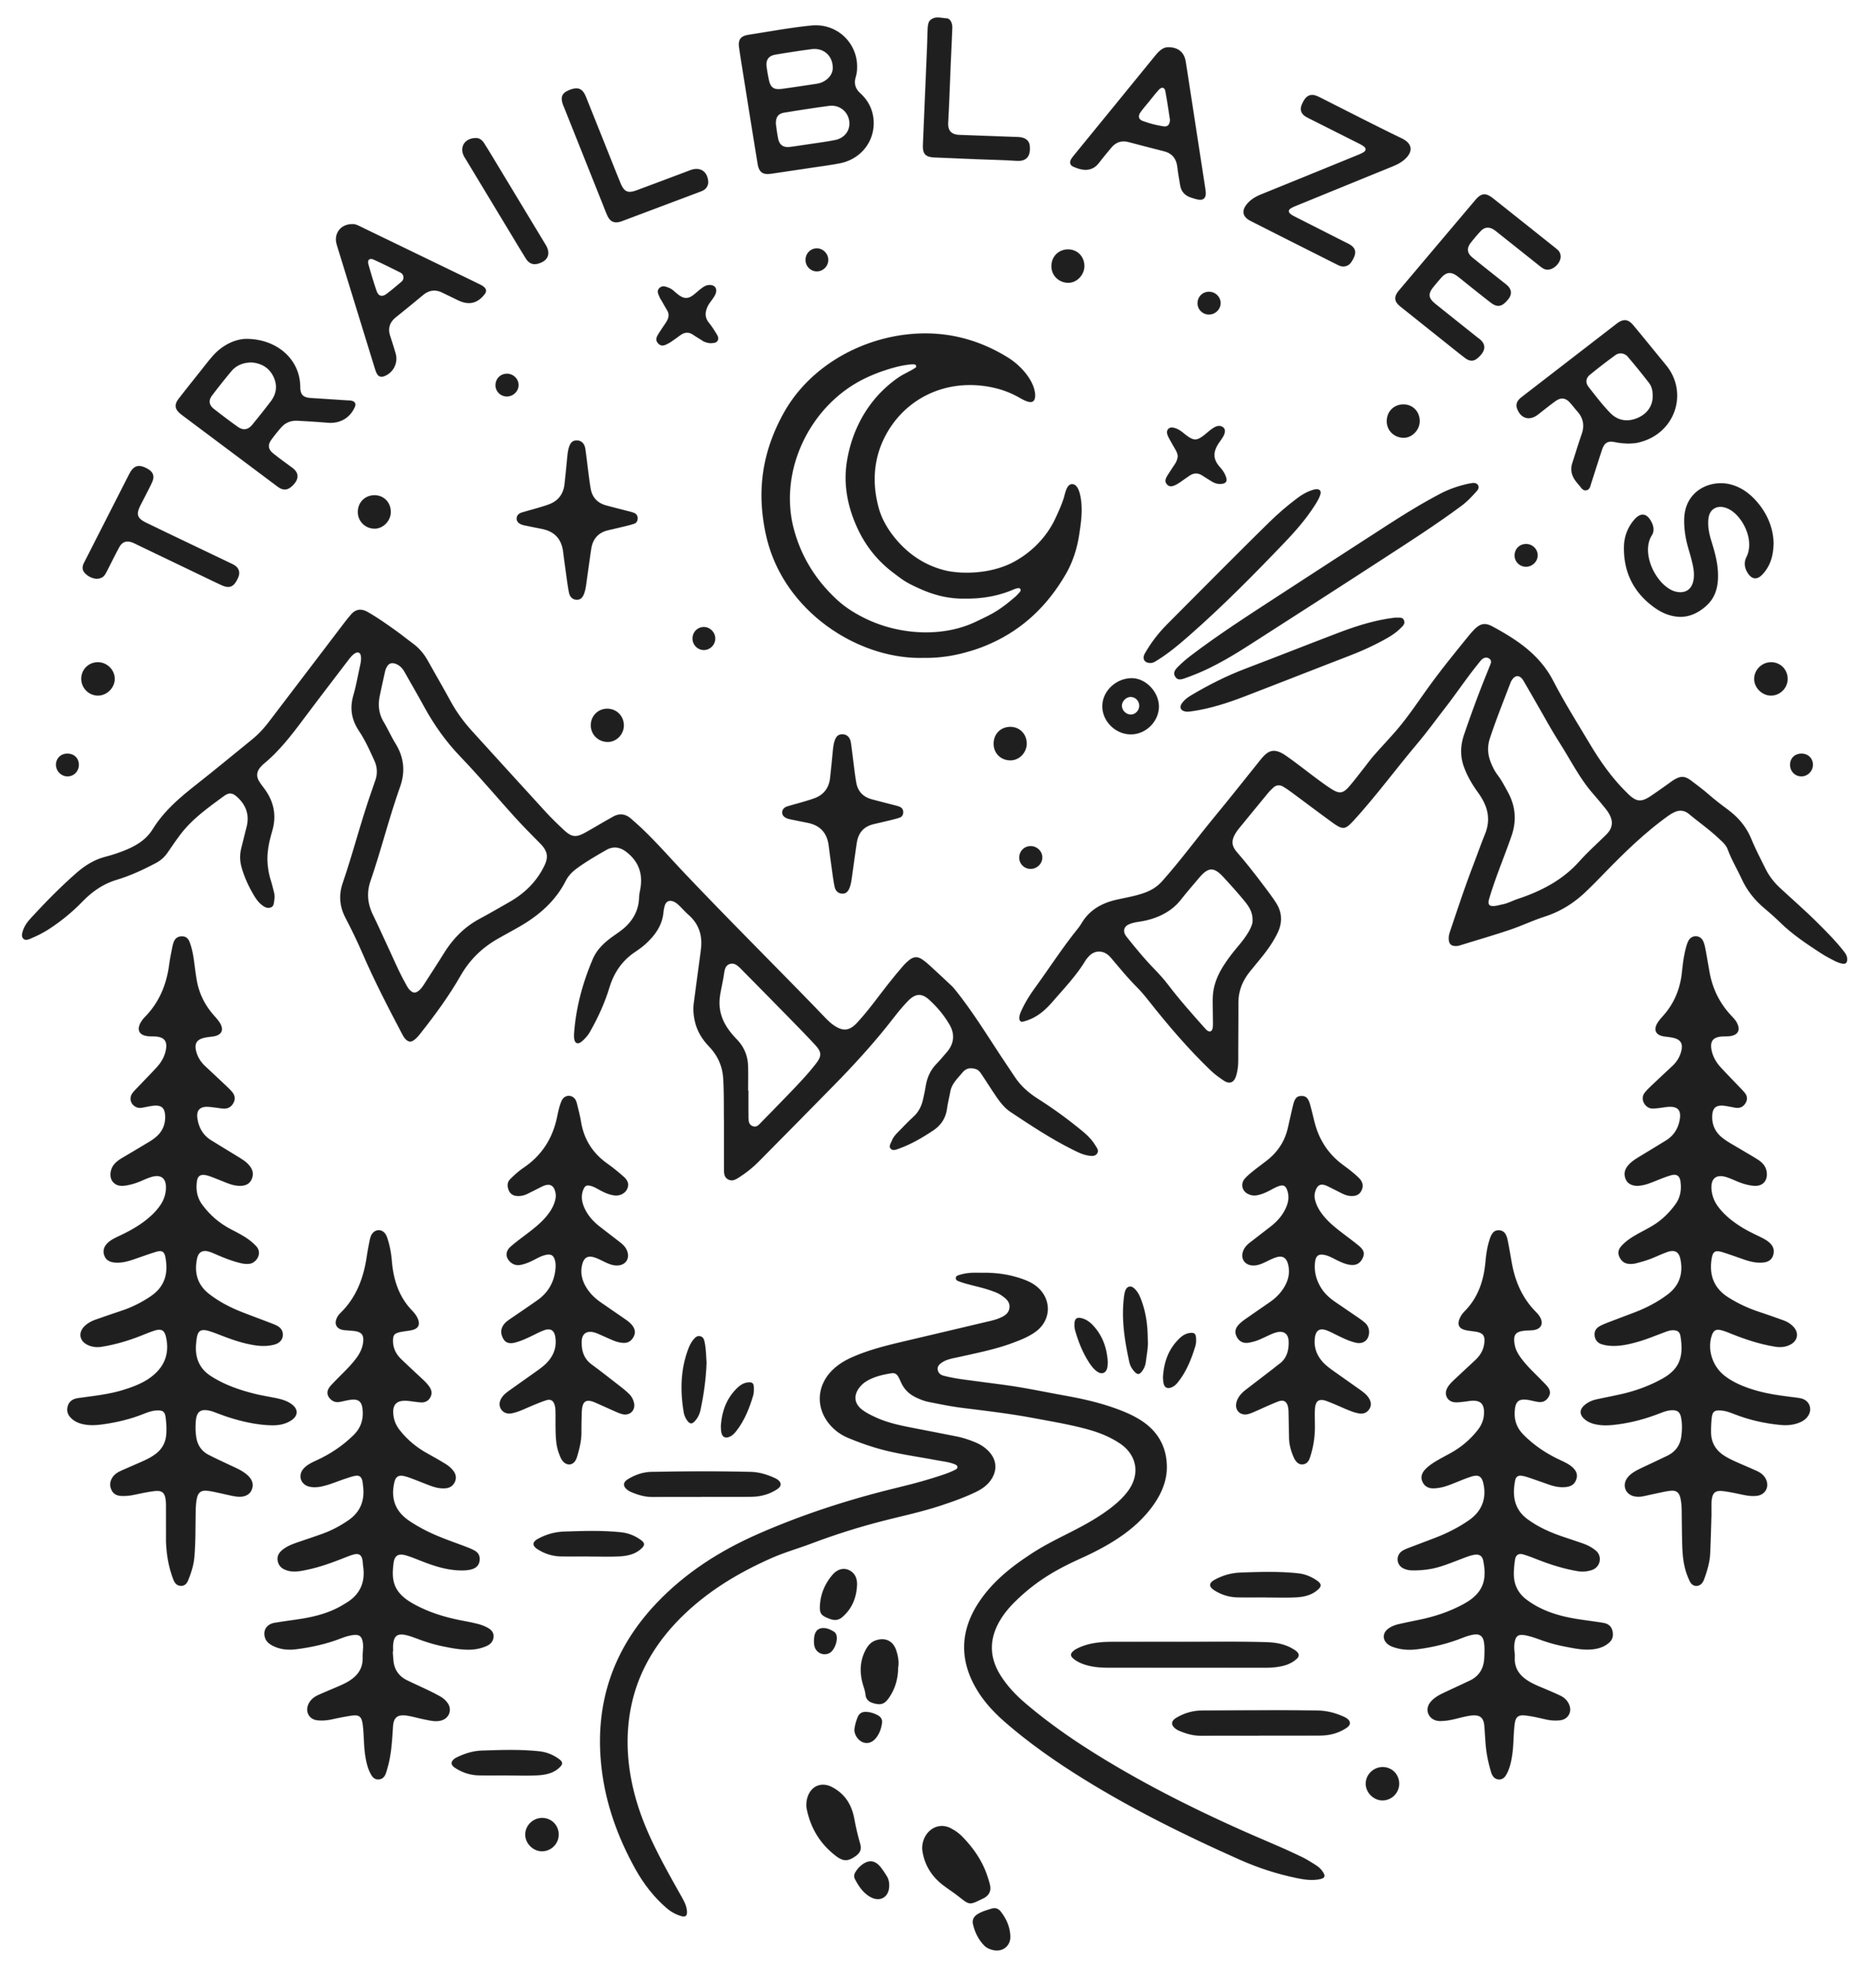 TrailBlazers